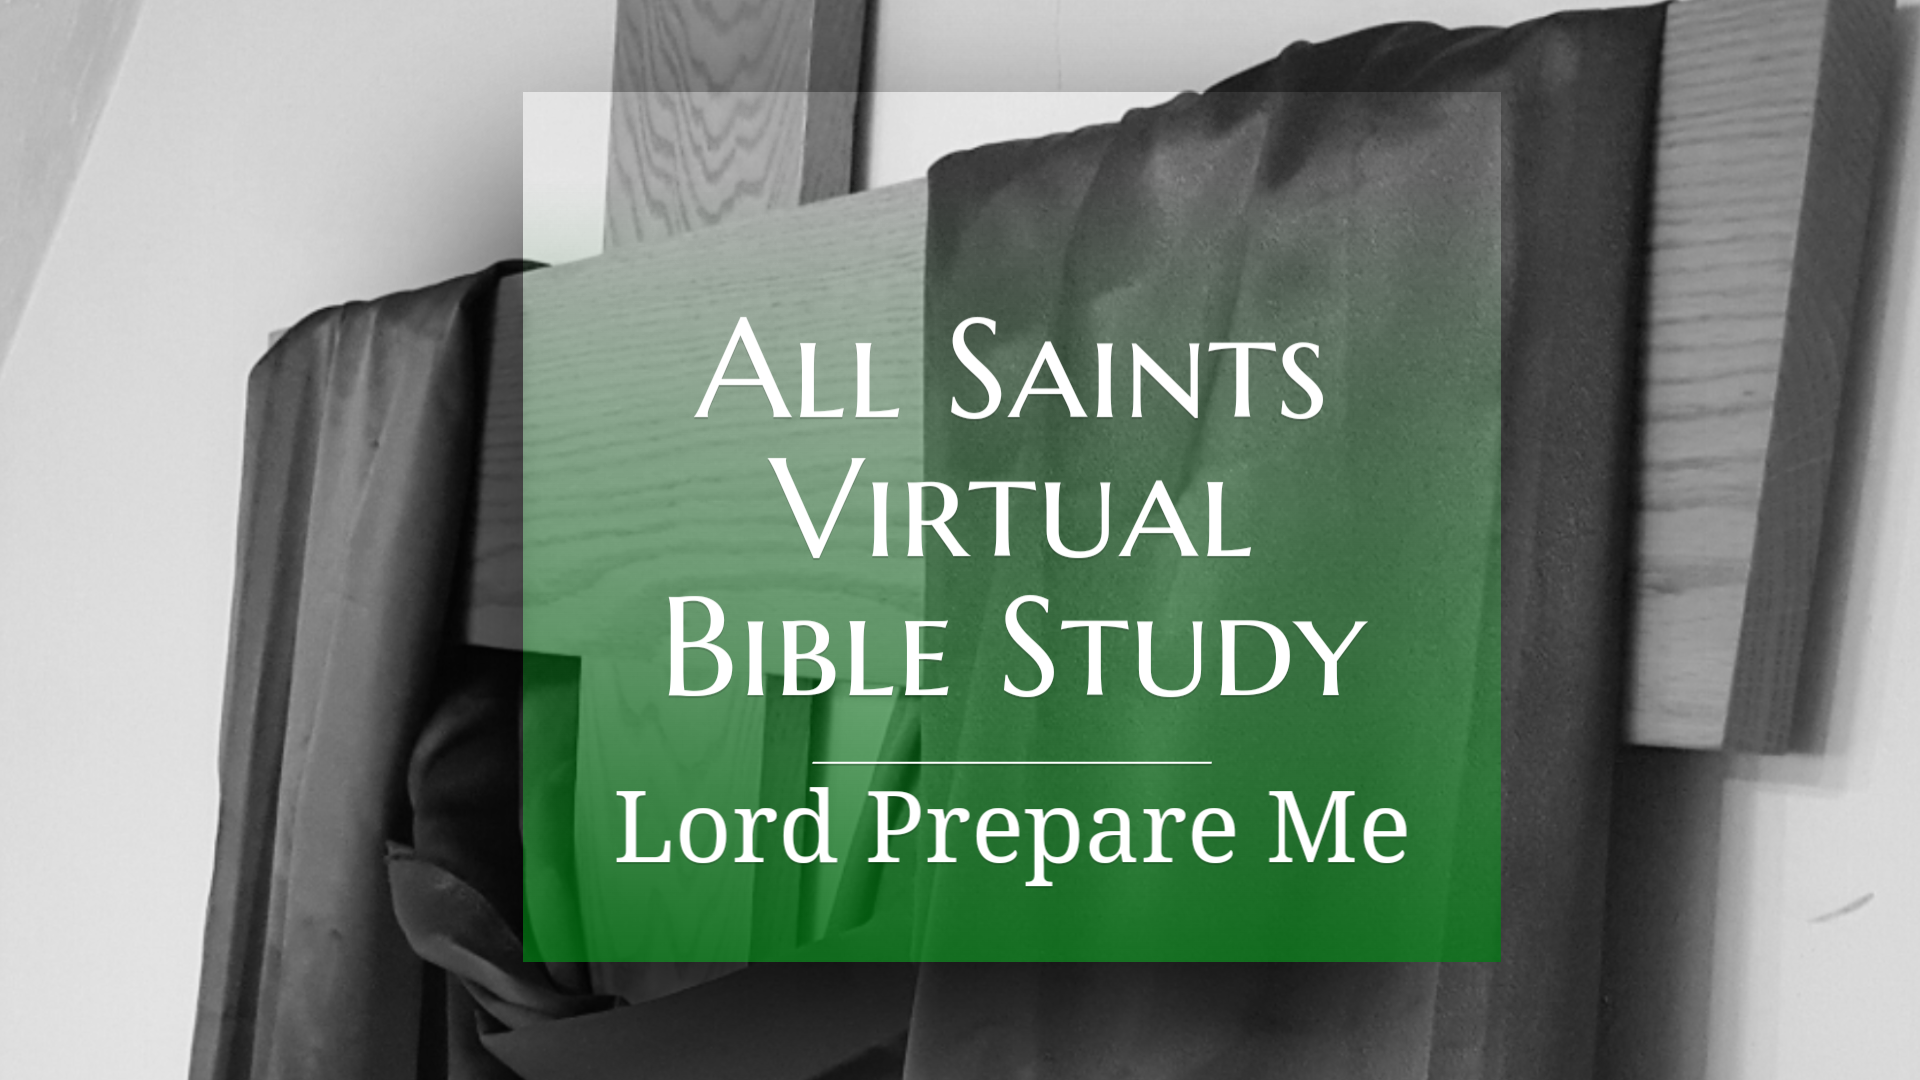 All Saints Virtual Bible Study - Lord Prepare Me